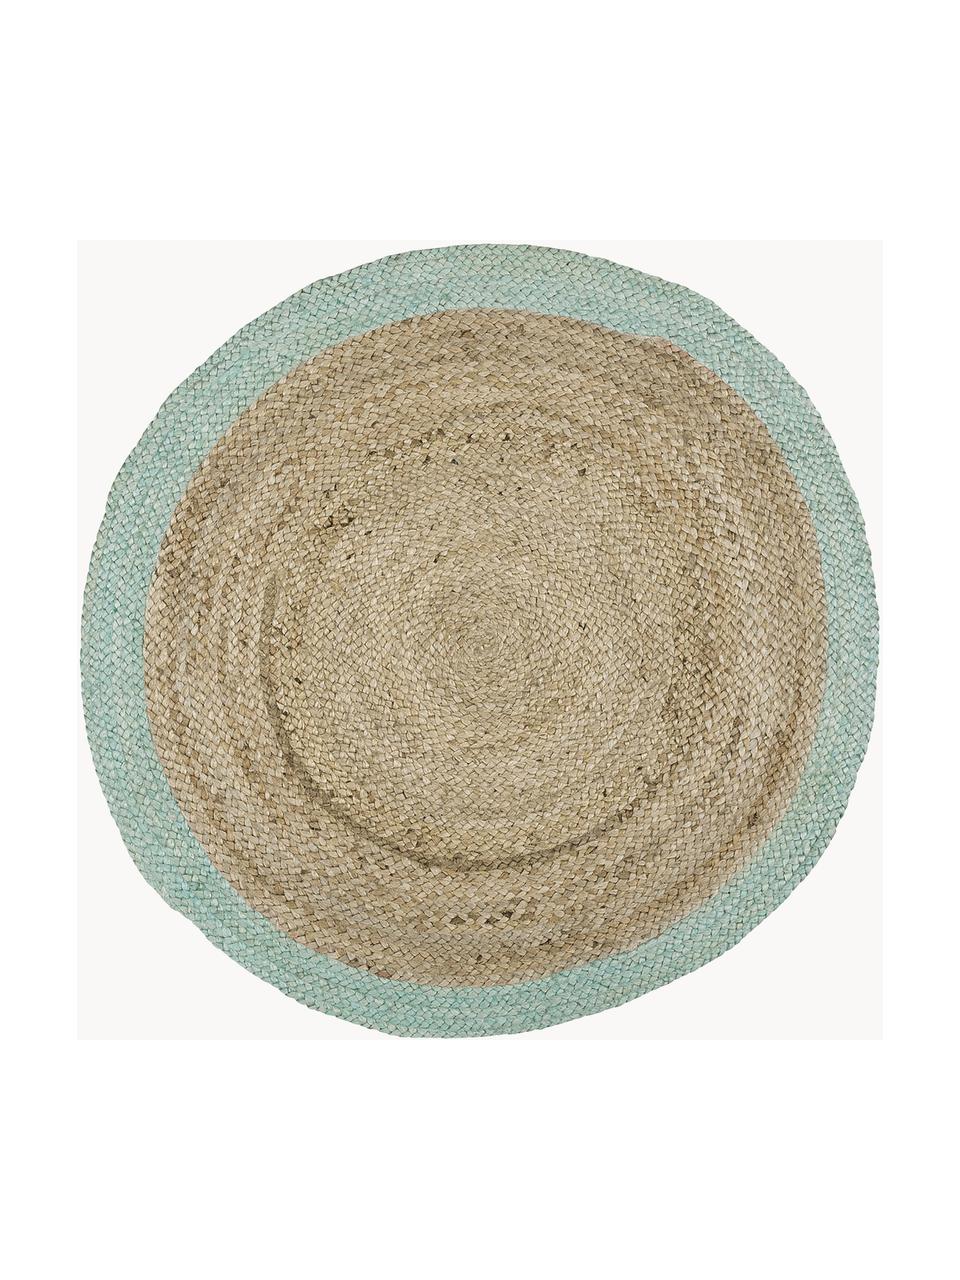 Okrúhly ručne vyrobený jutový koberec Shanta, 100 % juta

Pretože jutové koberce sú drsné, sú menej vhodné na priamy kontakt s pokožkou, Béžová, mätovozelená, Ø 200 cm (veľkosť L)